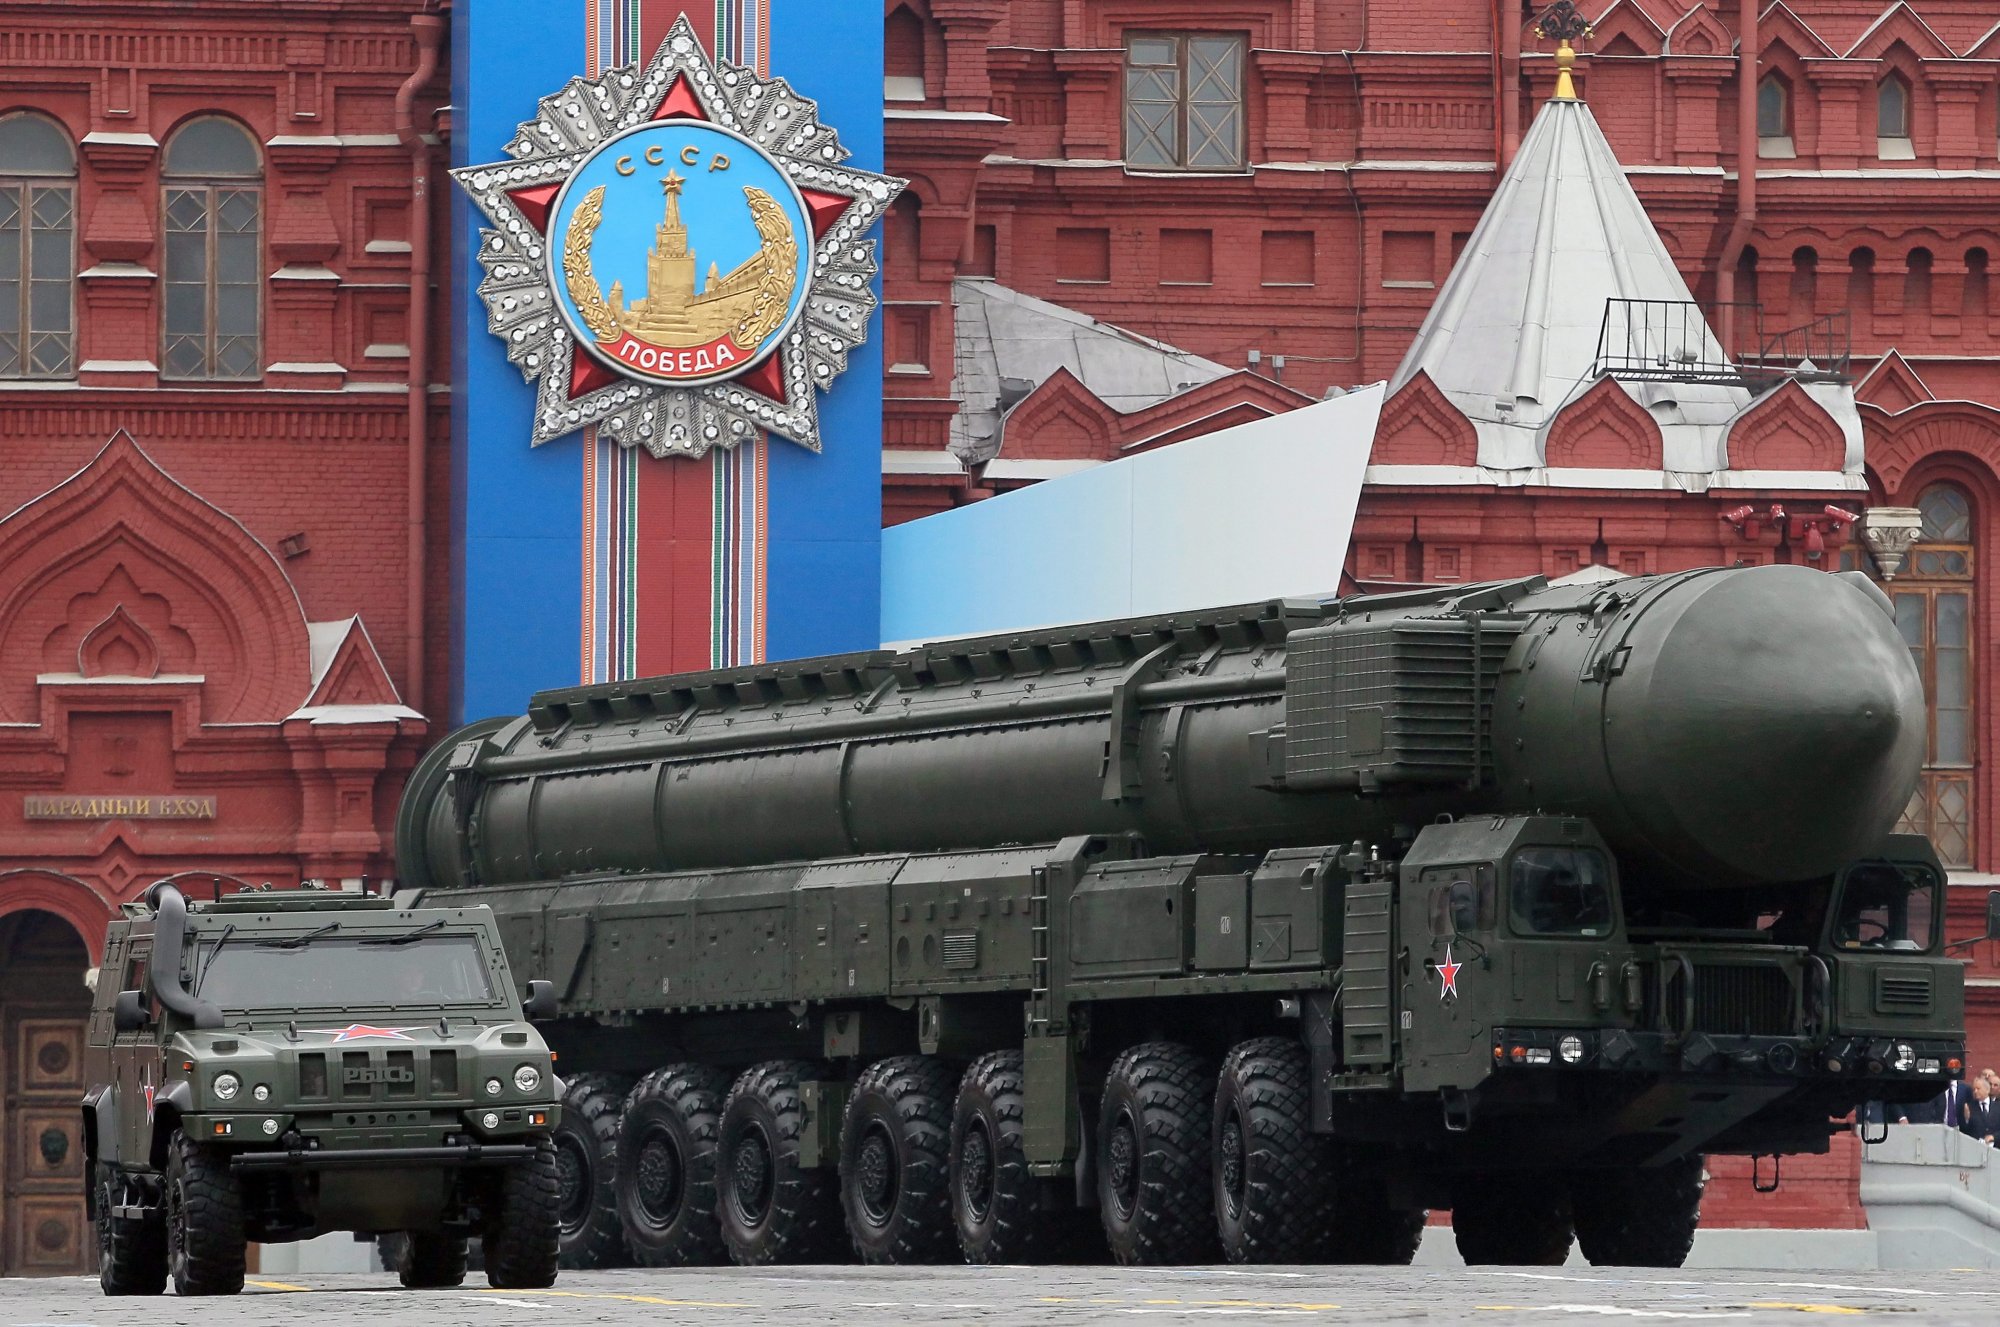 Ρωσία: Προειδοποίηση Μεντβέντεφ για πυρηνικά αντίποινα αν χτυπηθούν πυραυλικές βάσεις